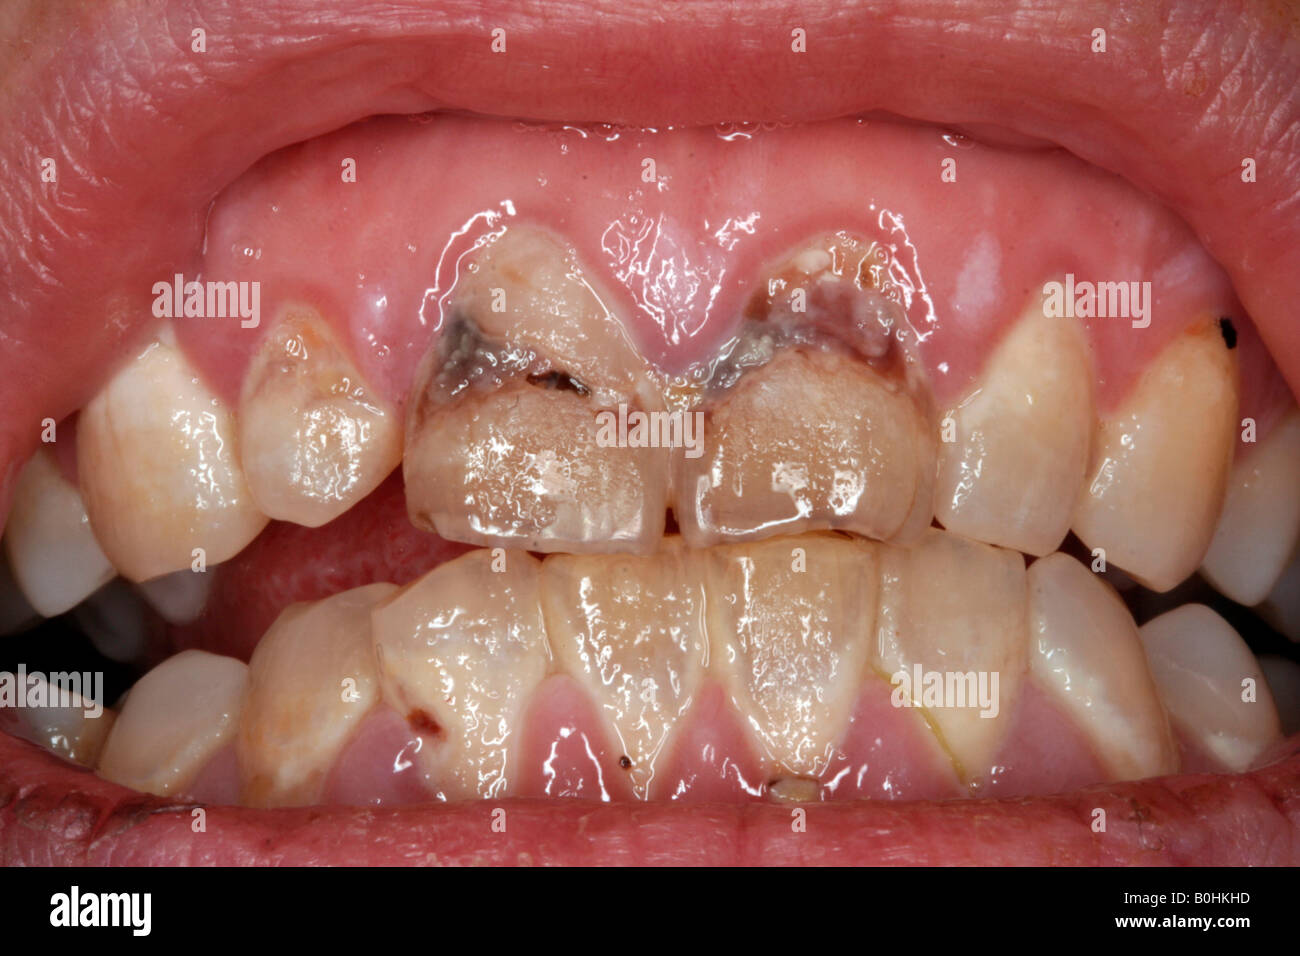 Karies, Nahaufnahme von einem Mund mit schlechten Zähnen Stockfoto